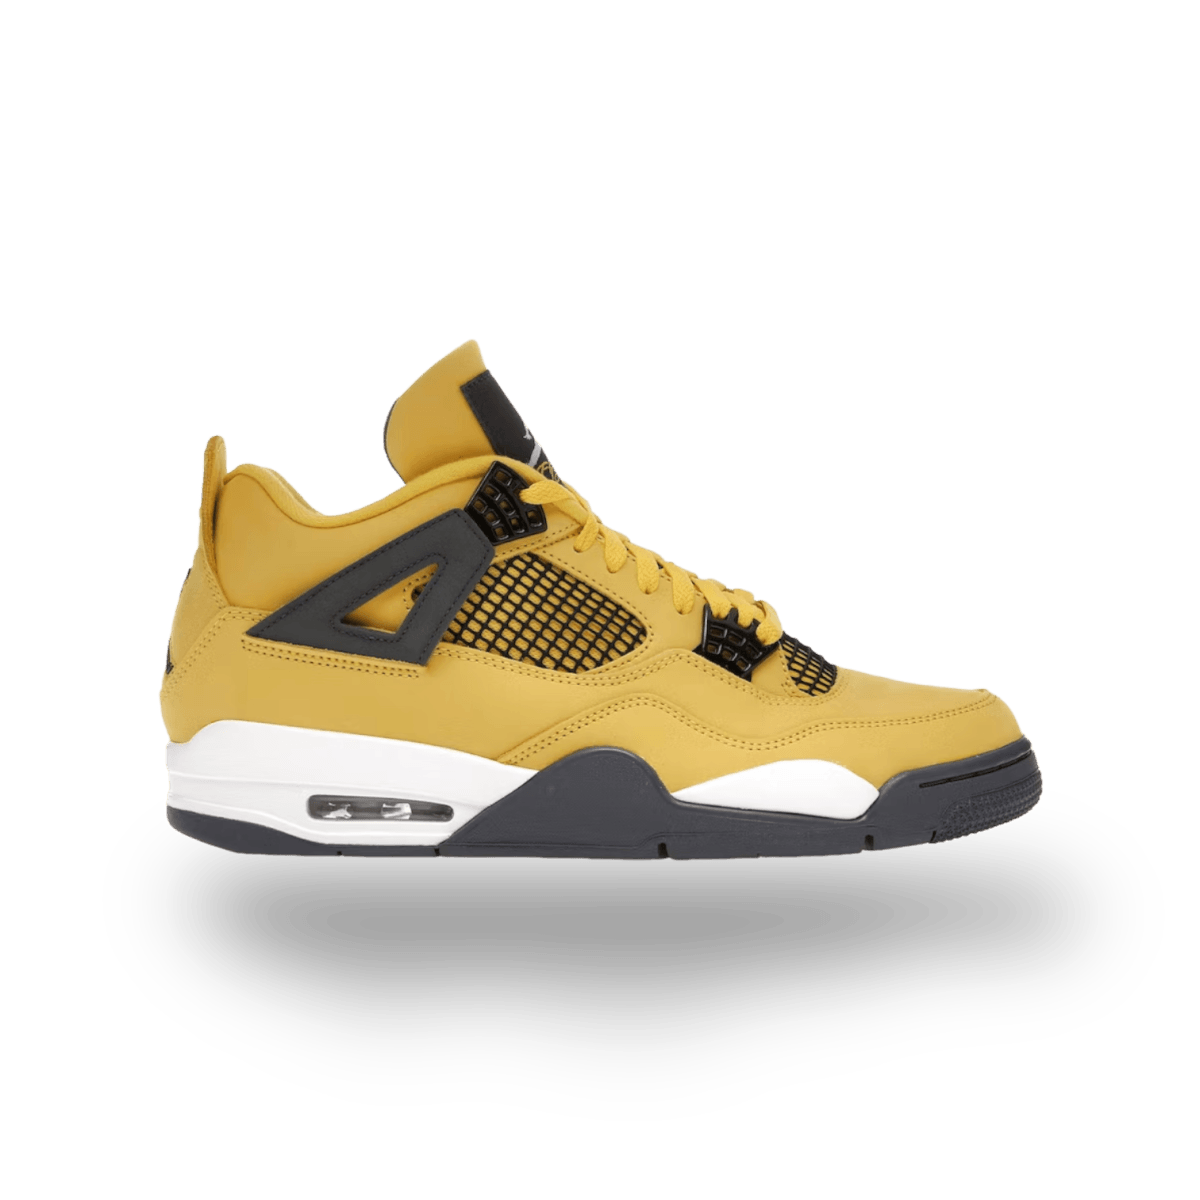 Jordan 4 Retro Lightning (2021) - Mid Sneaker - Jawns on Fire Sneakers & Streetwear